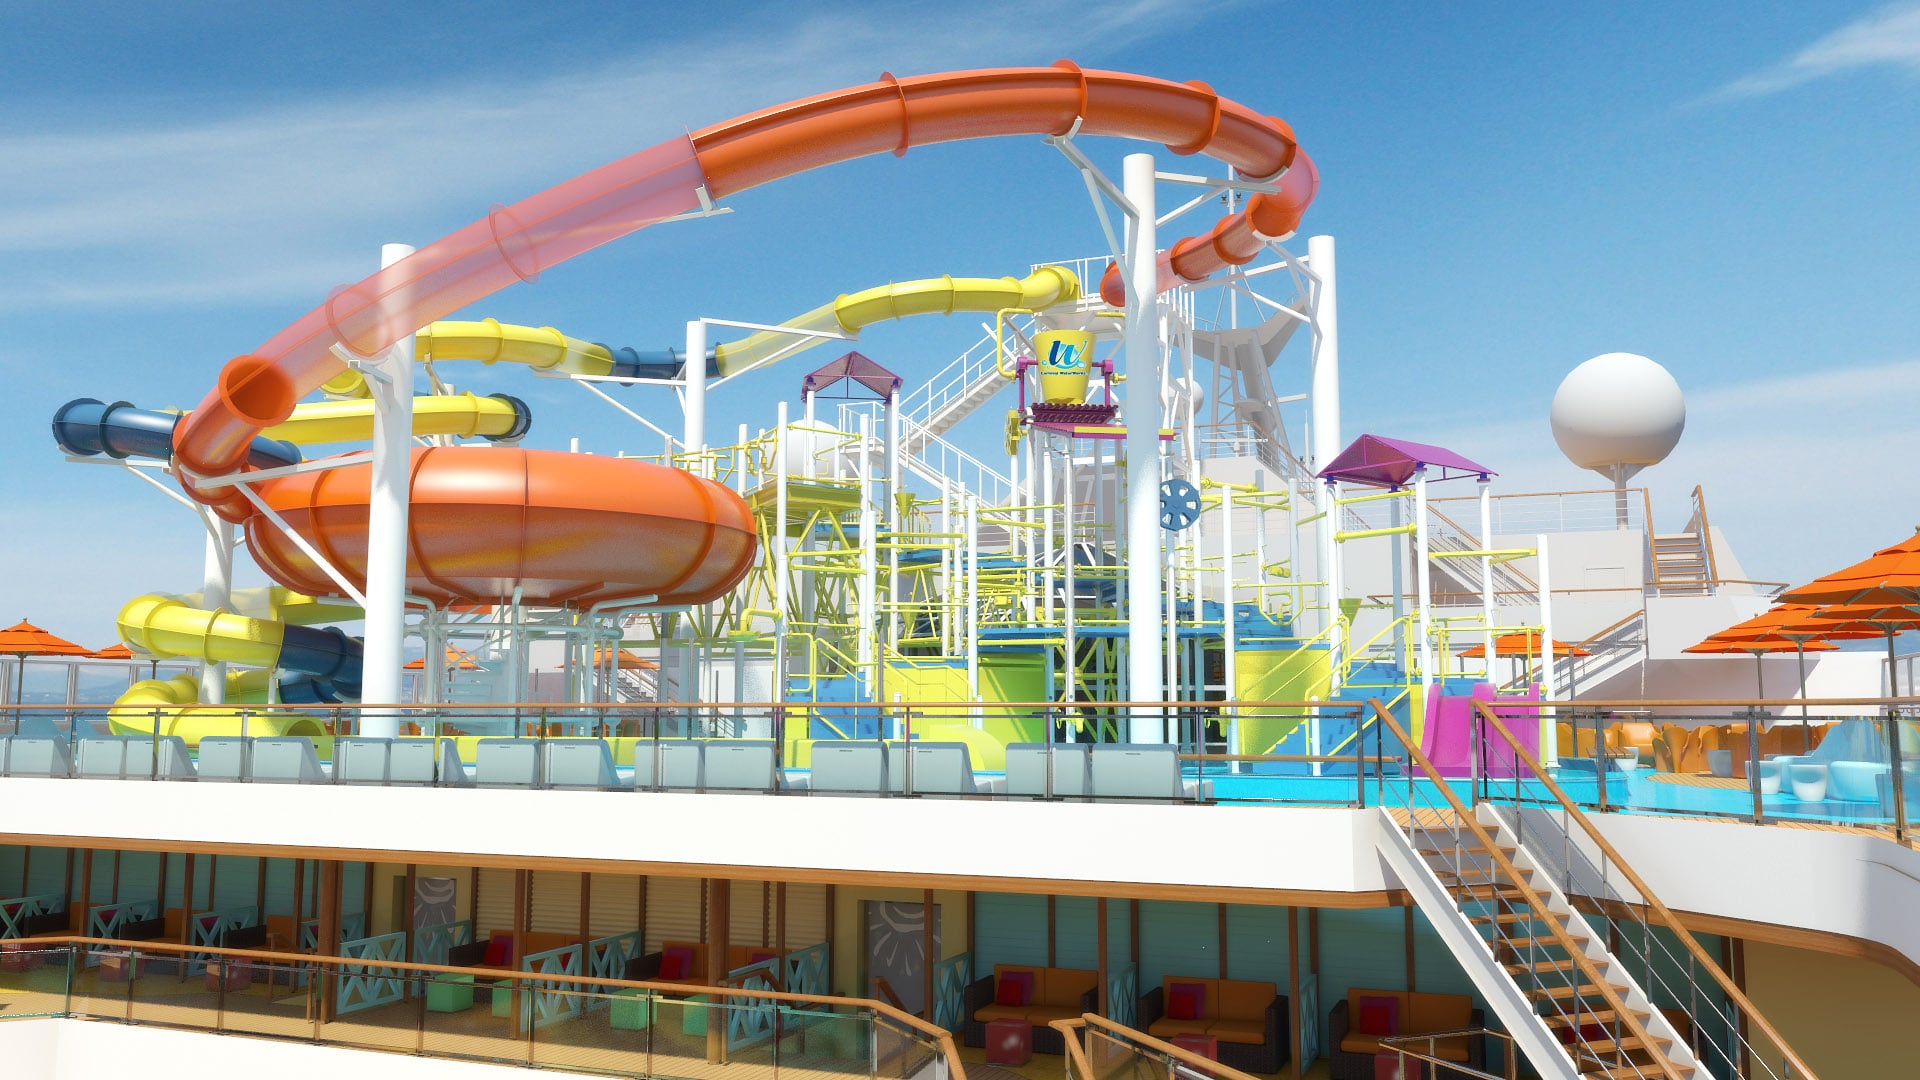 Cruiseschip-Carnival Magic-Carnival-Glijbanen